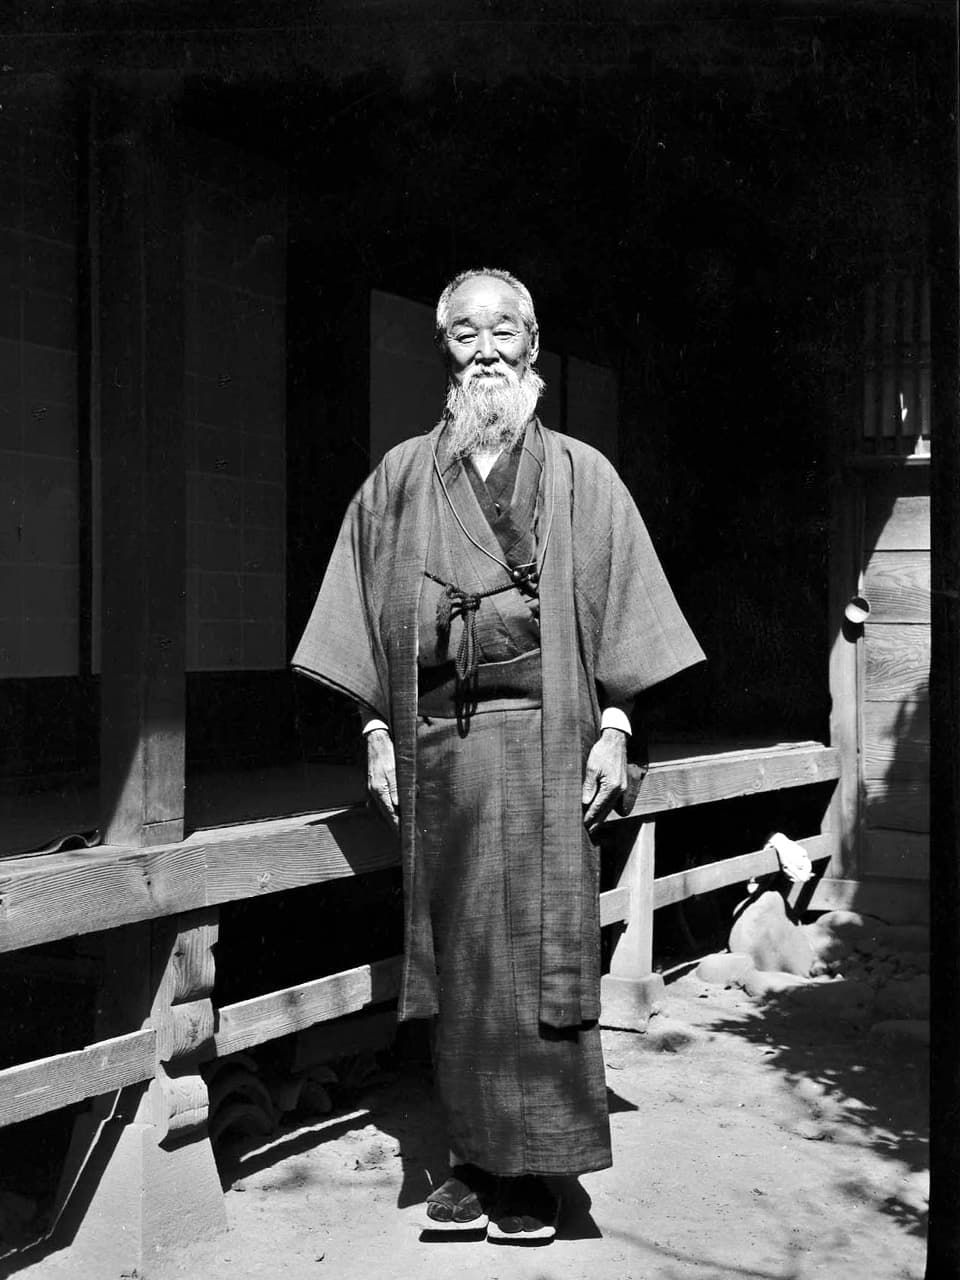 Funatsu Seisaku, photographed by Ingram in 1926. (Courtesy of the Ingram family)